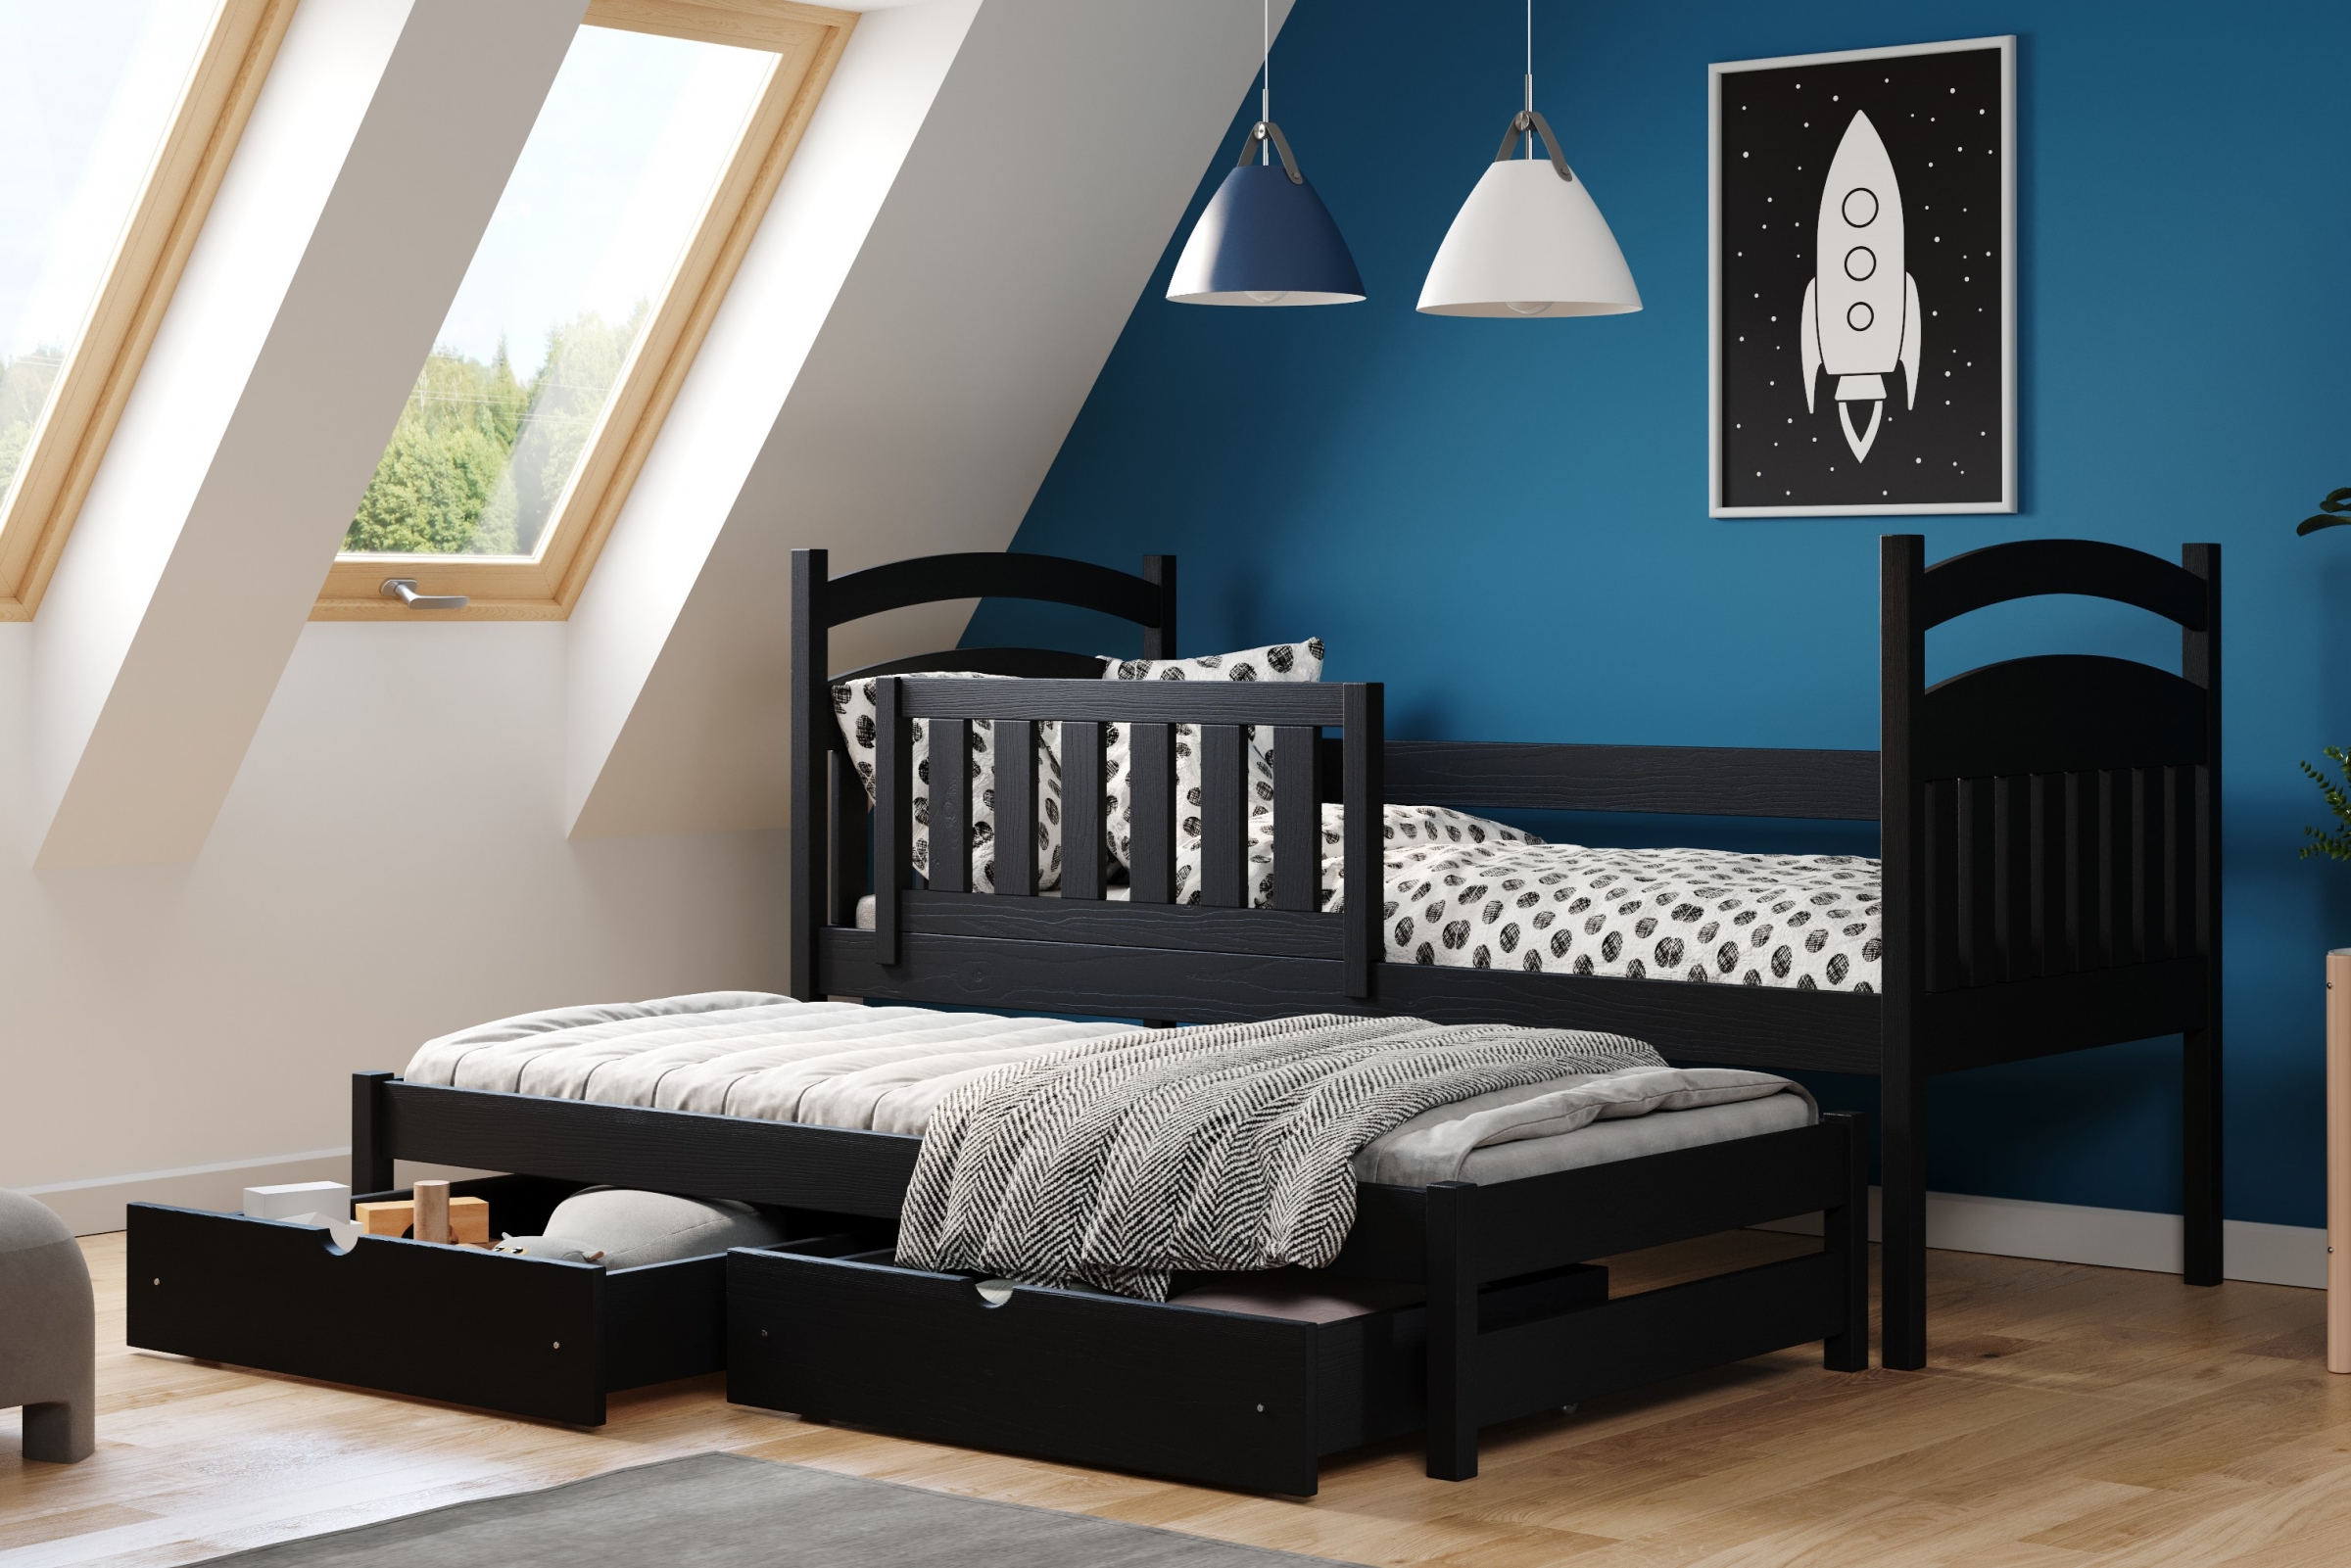 Łóżko dziecięce parterowe wysuwane Amely - czarny, 80x200 Łóżko dziecięce parterowe wyjazdowe Amely - kolor czarny - aranżacja